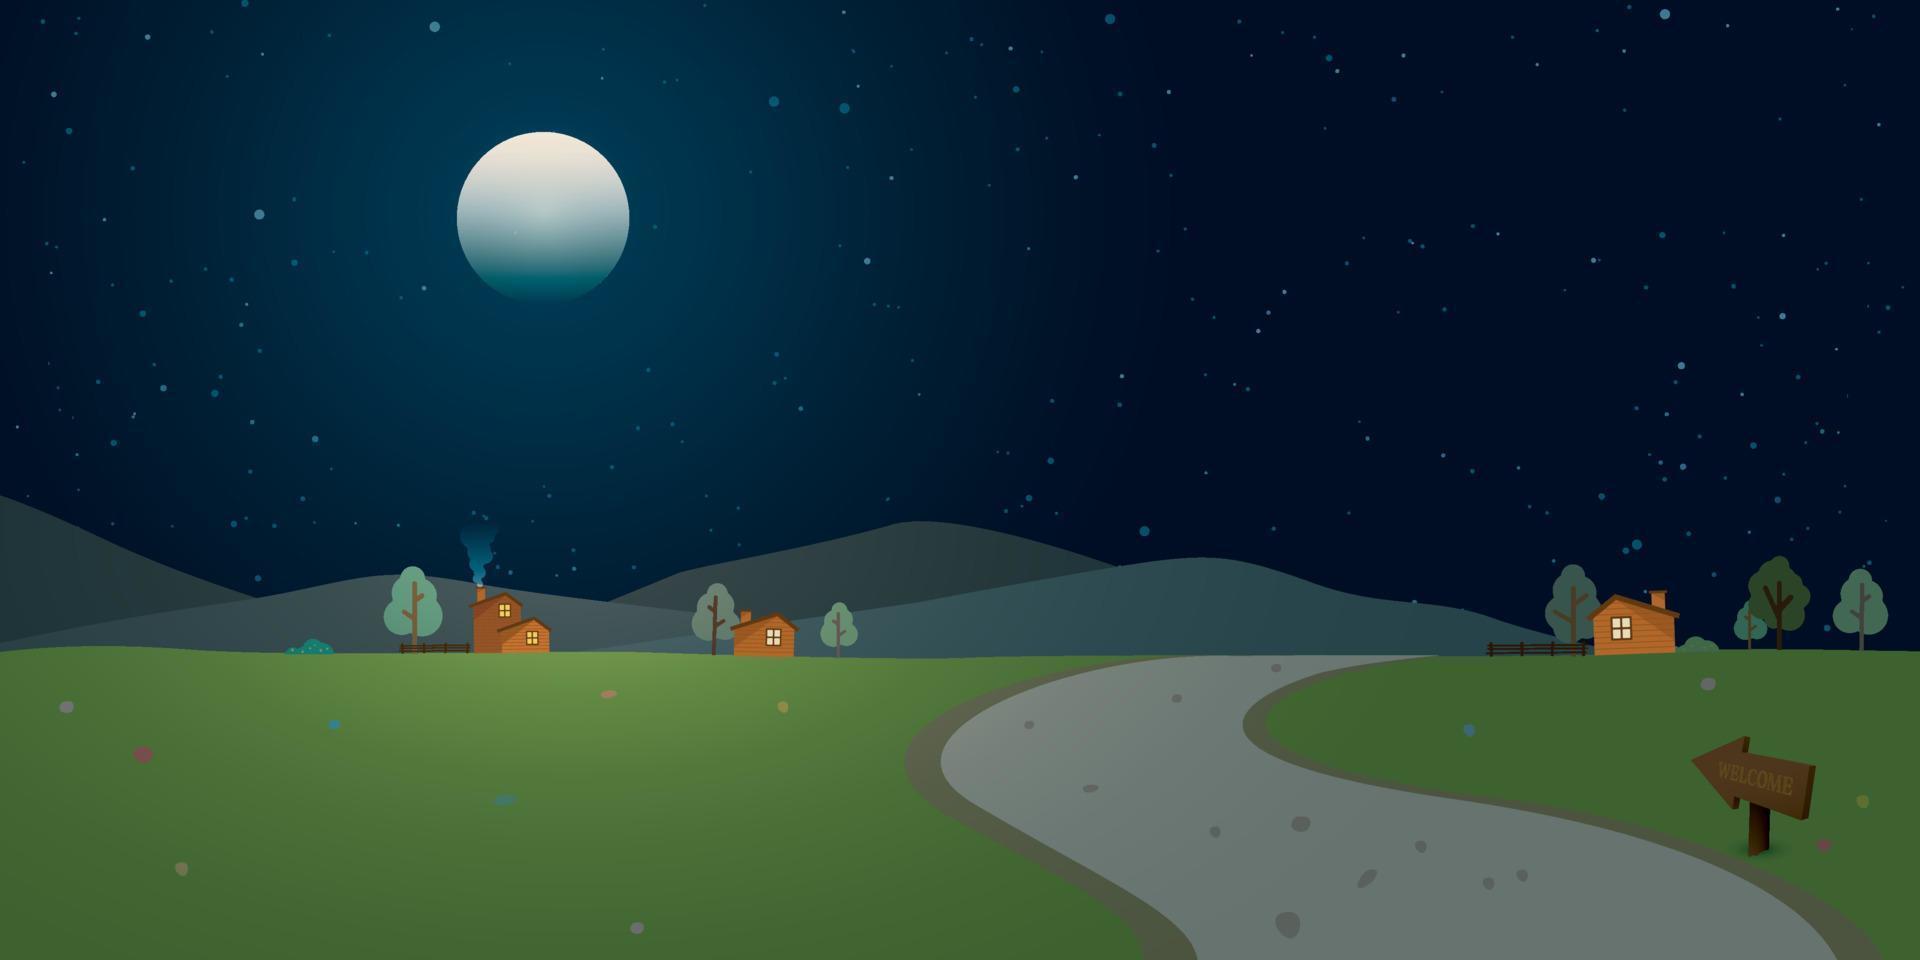 local la carretera mediante el pueblo a colinas a campo paisaje a noche con Luna llena y un lote de estrellas en el cielo vector ilustración.